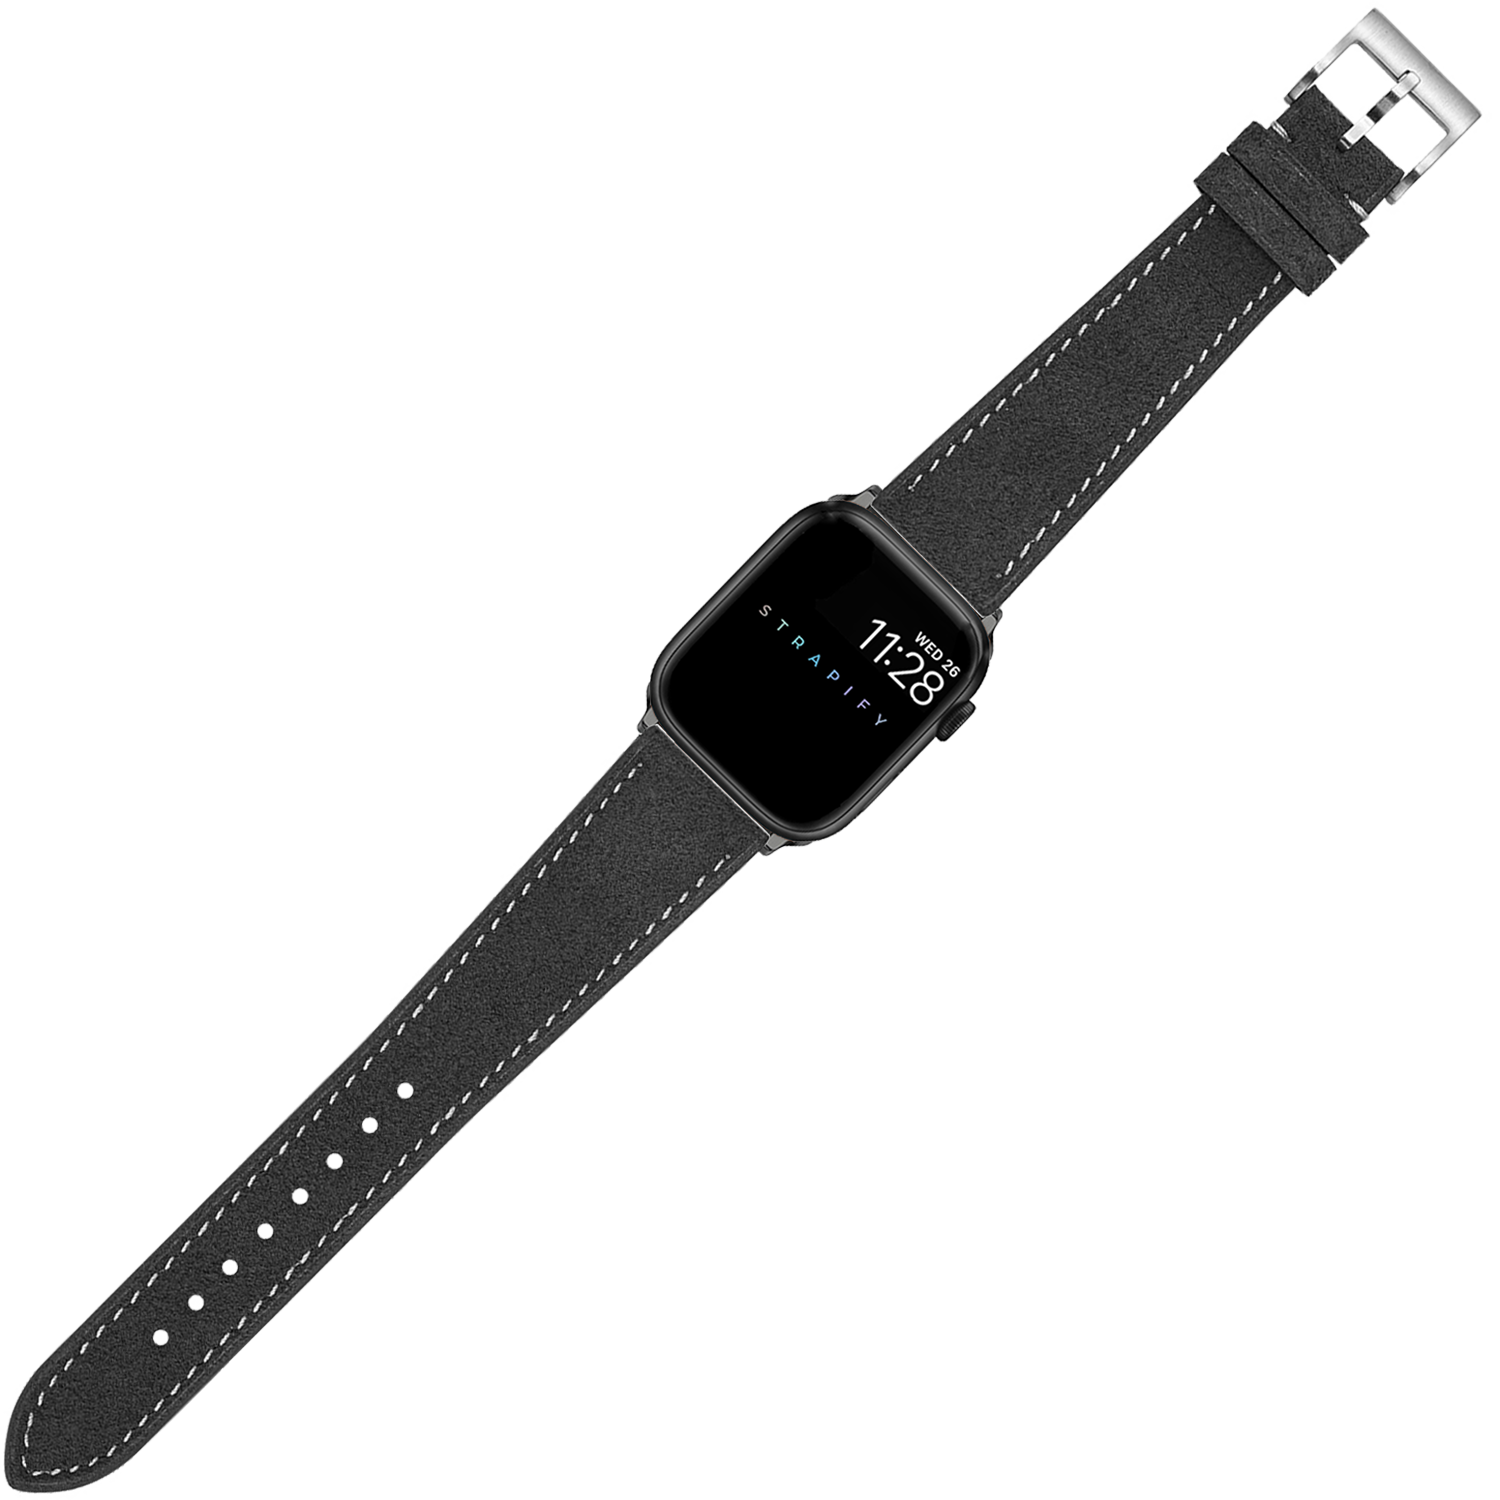 [Apple Watch] Alcantara Leather - Dark Grey | White Stitching